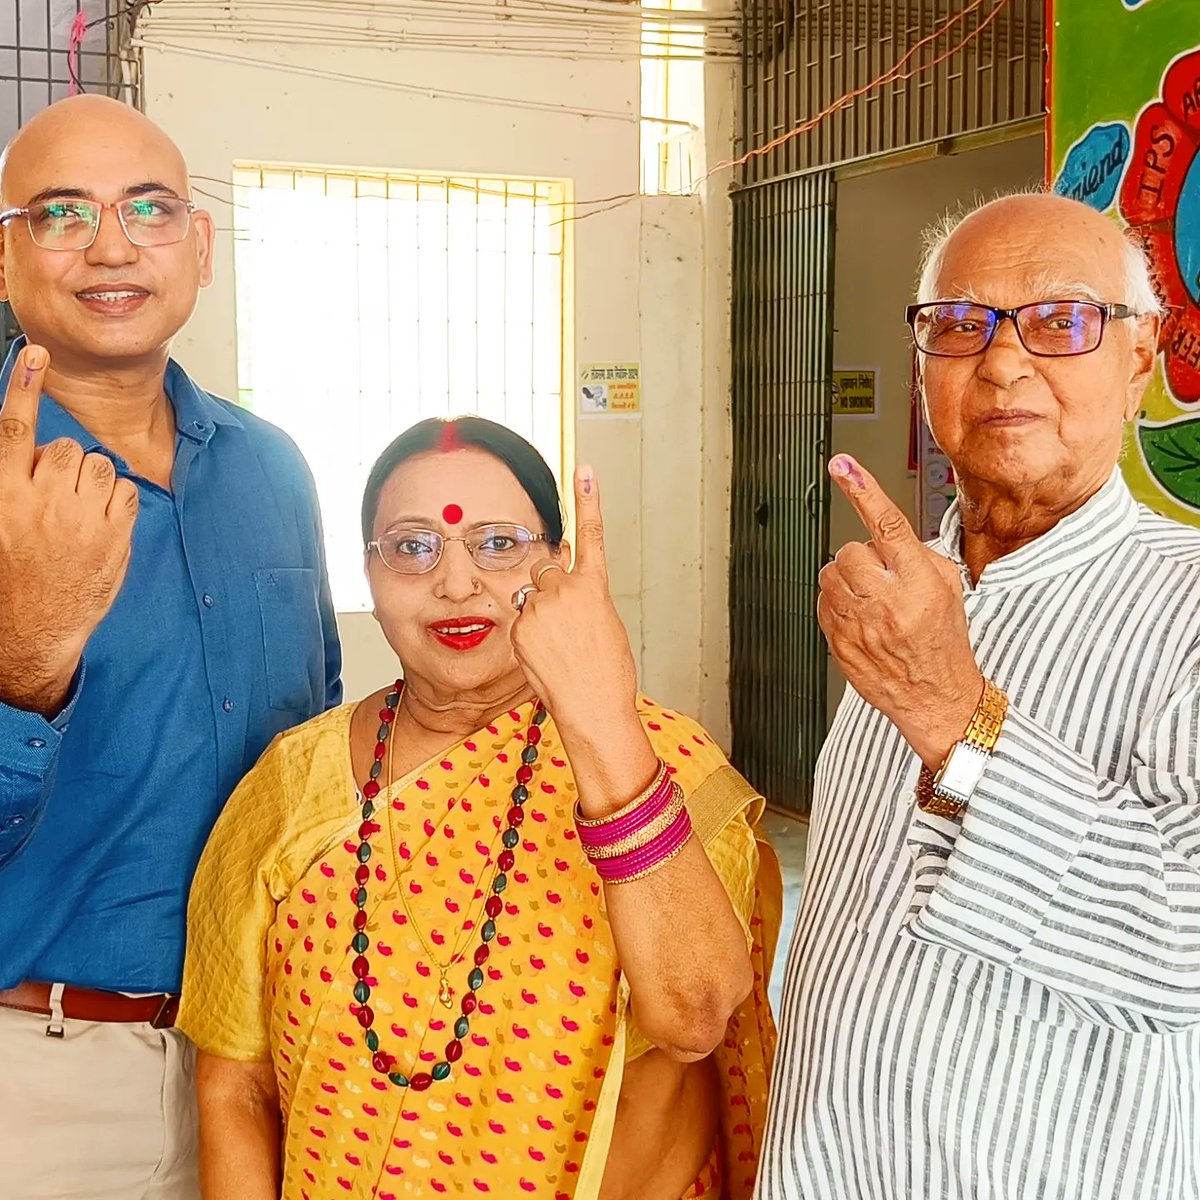 चुनाव के पर्व में मैने अपने परिवार सहित मतदान किया । हमने अपनी जिम्मेदारी निभाई , आप सब भी जरूर अपनी जिम्मेदारियां निभाएं । #loksabhaelection2024